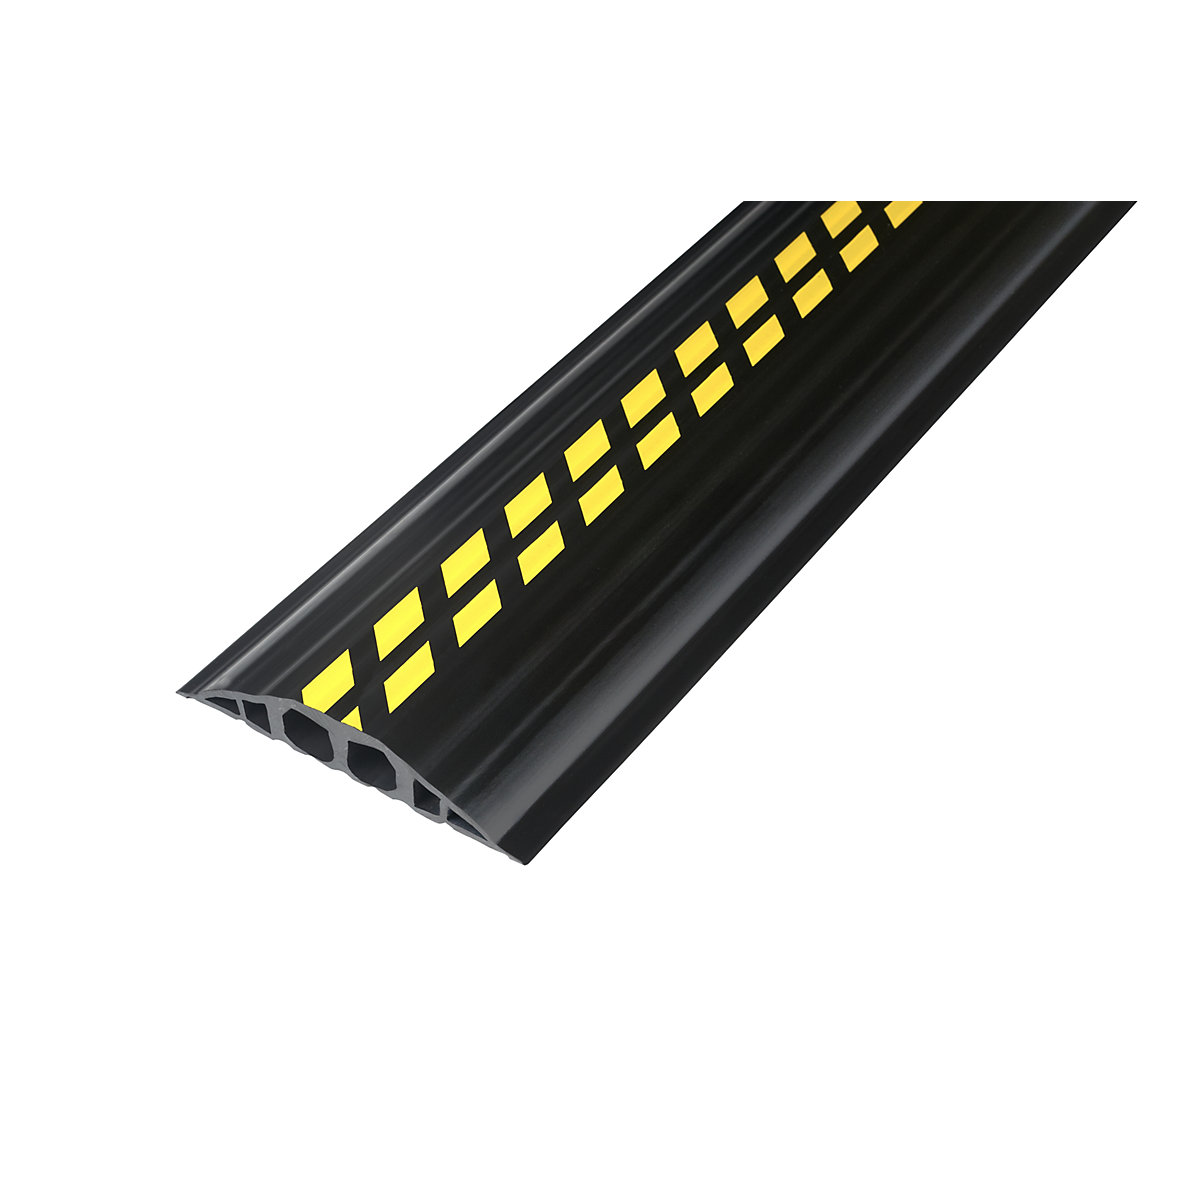 Kabelový můstek z PVC, d x š x v 1500 x 200 x 35 mm, černá / žlutá